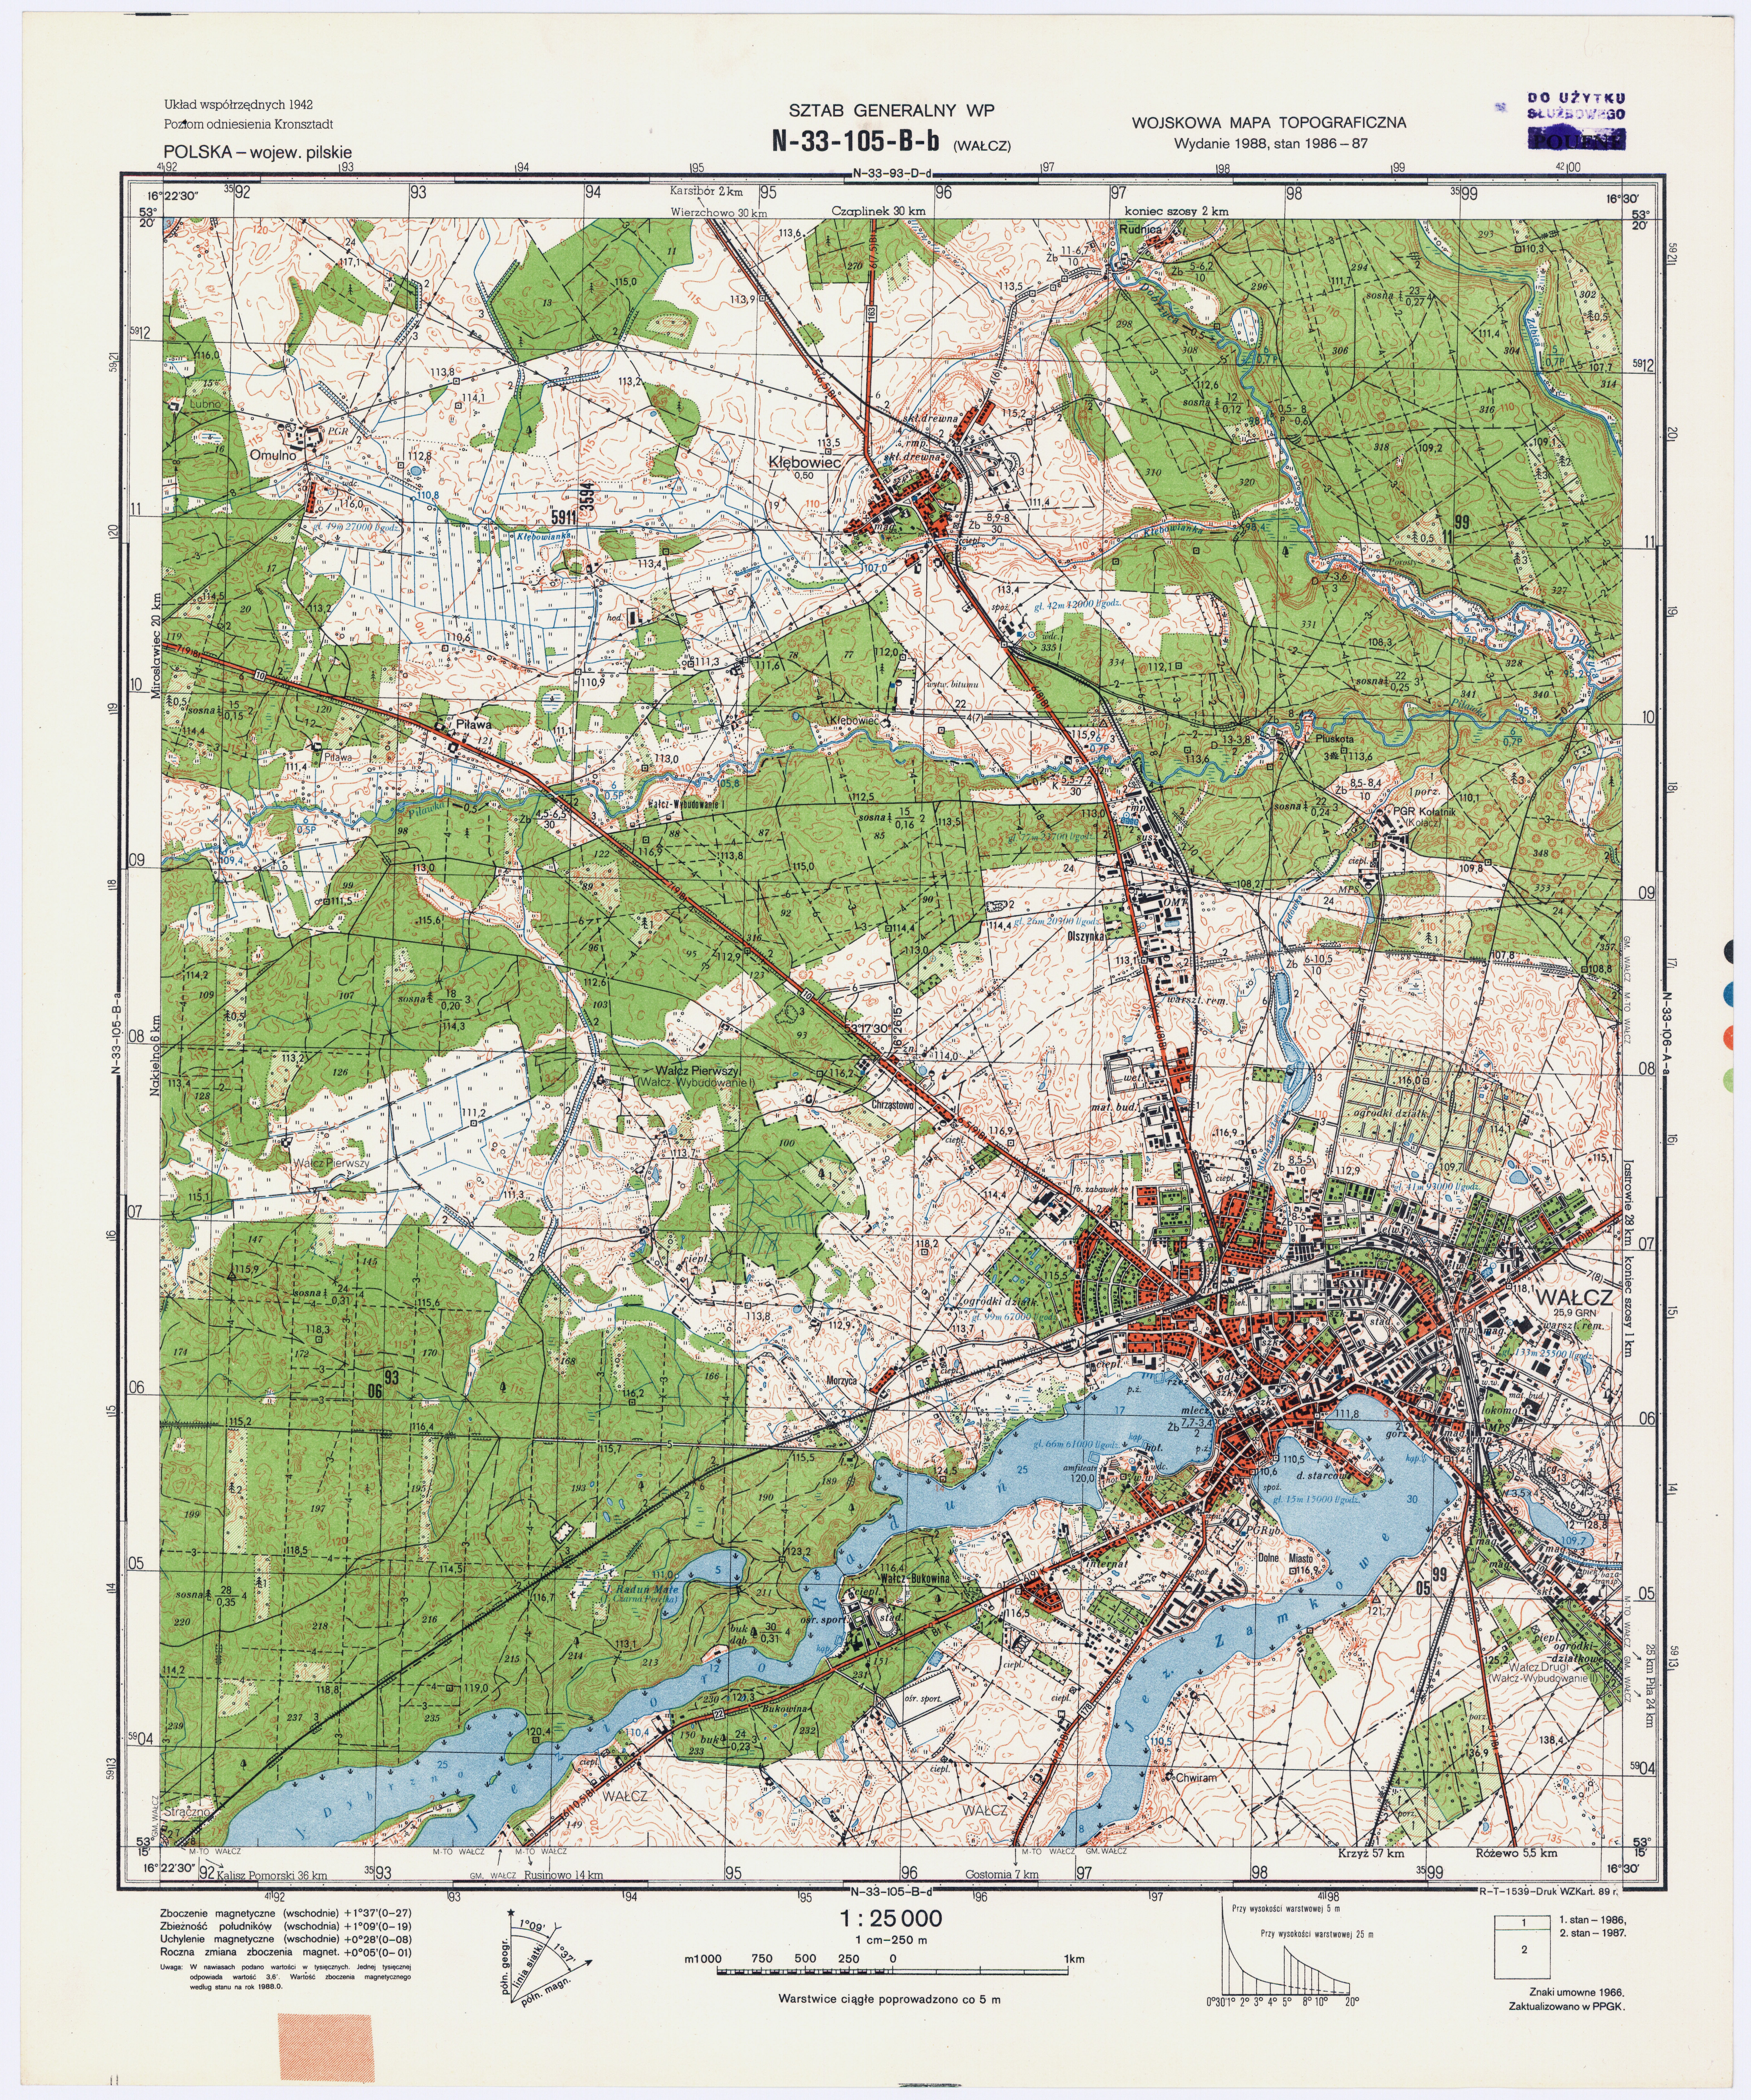 Mapy topograficzne LWP 1_25 000 - N-33-105-B-b_WALCZ_1989 2.jpg